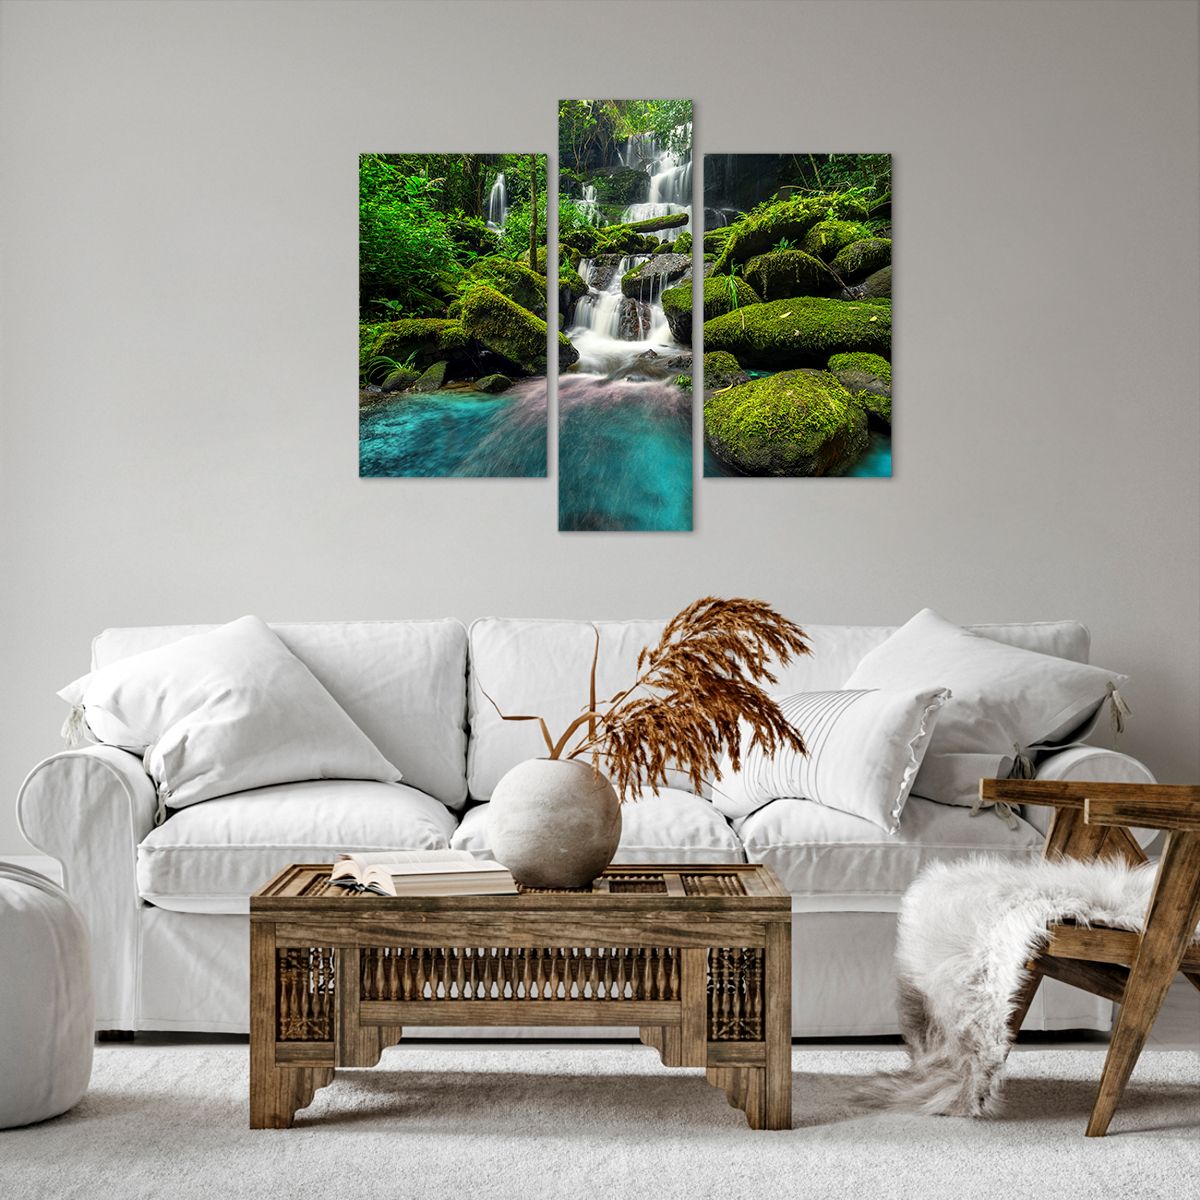 Bild auf Leinwand Landschaft, Bild auf Leinwand Wasserfall, Bild auf Leinwand Gebirgsbach, Bild auf Leinwand Wald, Bild auf Leinwand Natur